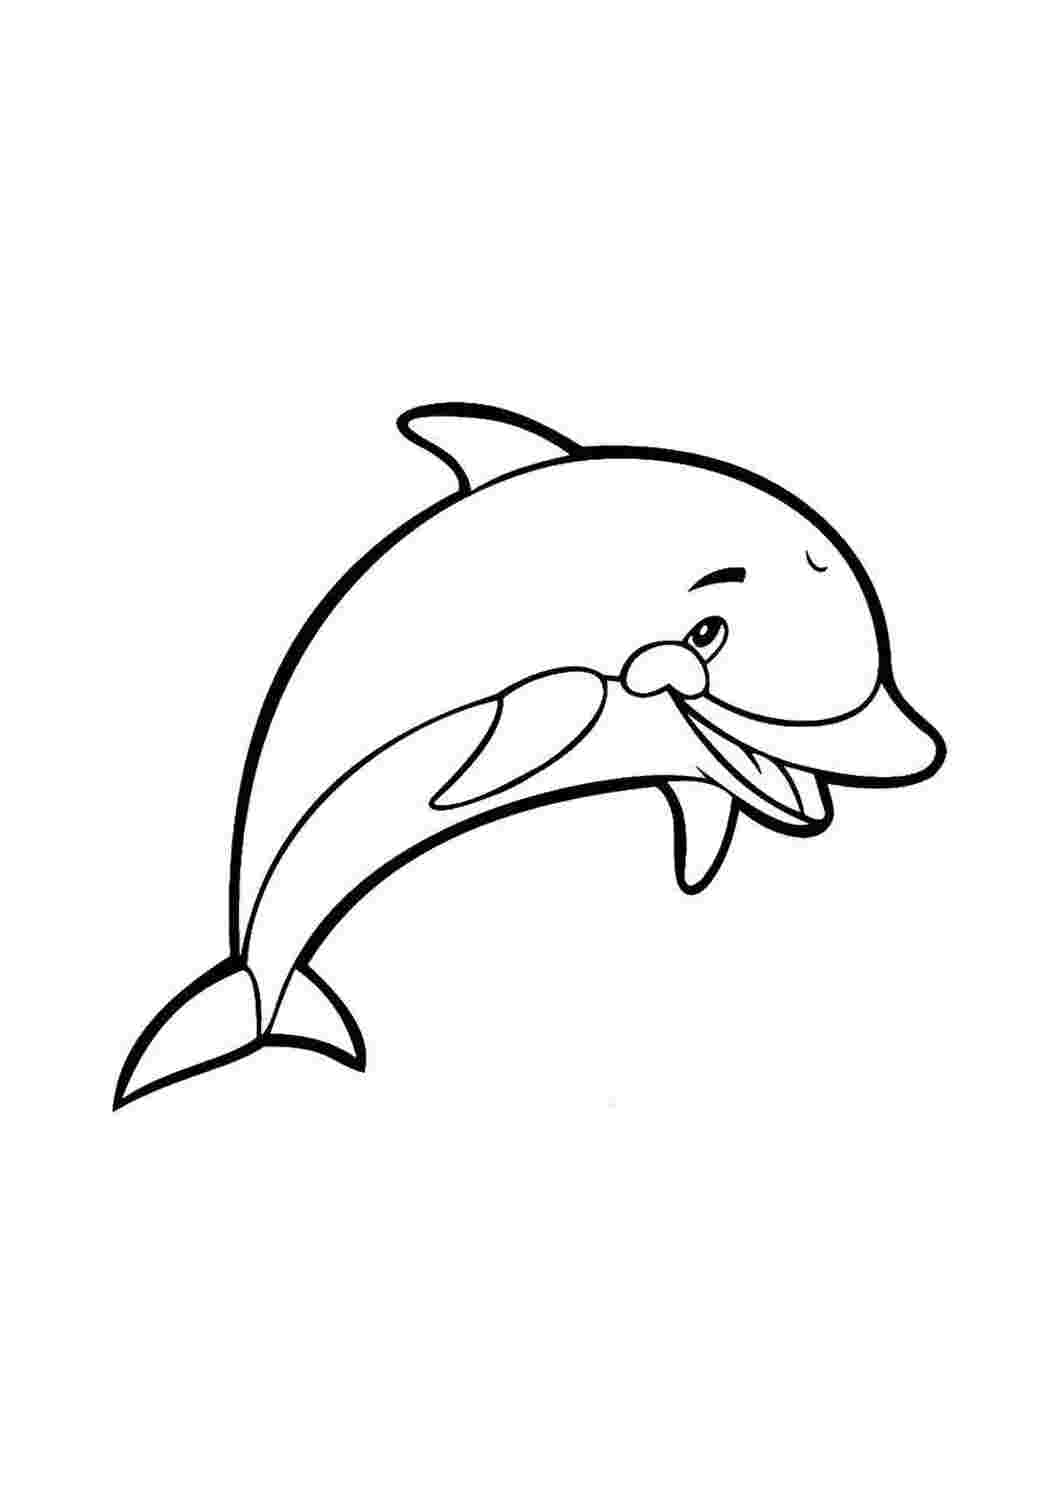 Раскрашивать дельфины. Раскраска Дельфин. Раскраска "дельфины". Рскраска Дрельмэн. Дельфин раскраска для детей.